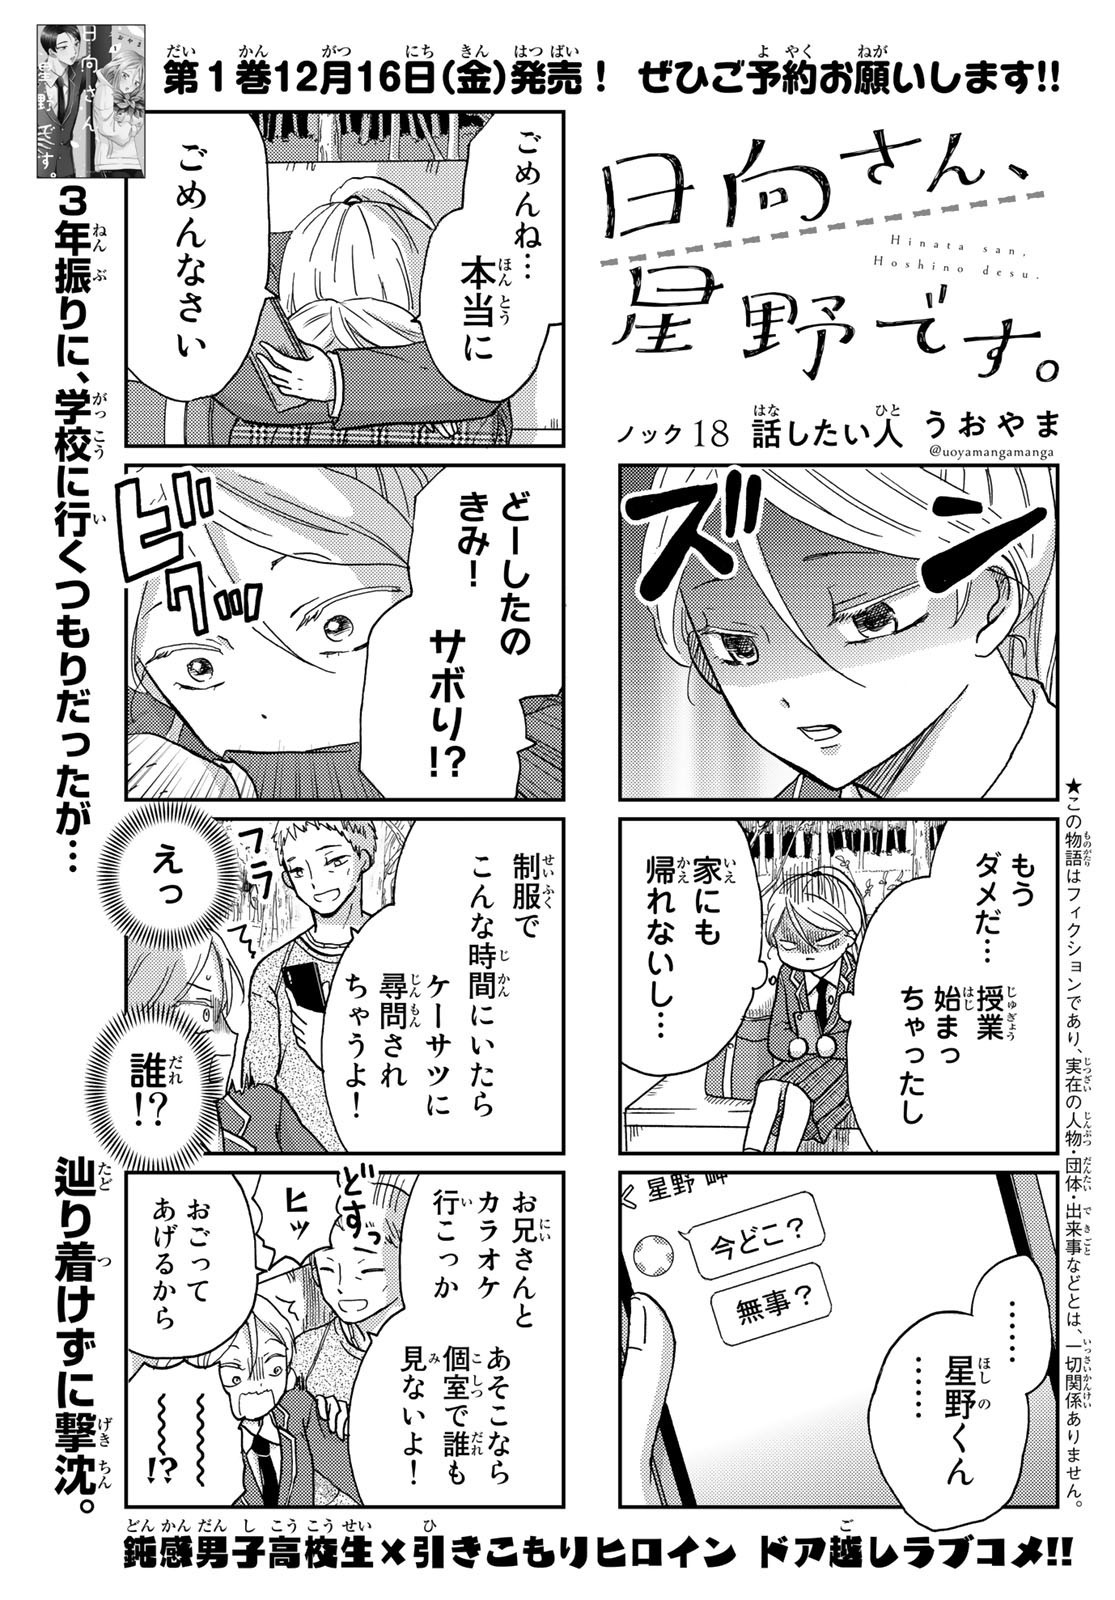 Hinata-san, Hoshino desu. - Chapter 018 - Page 1